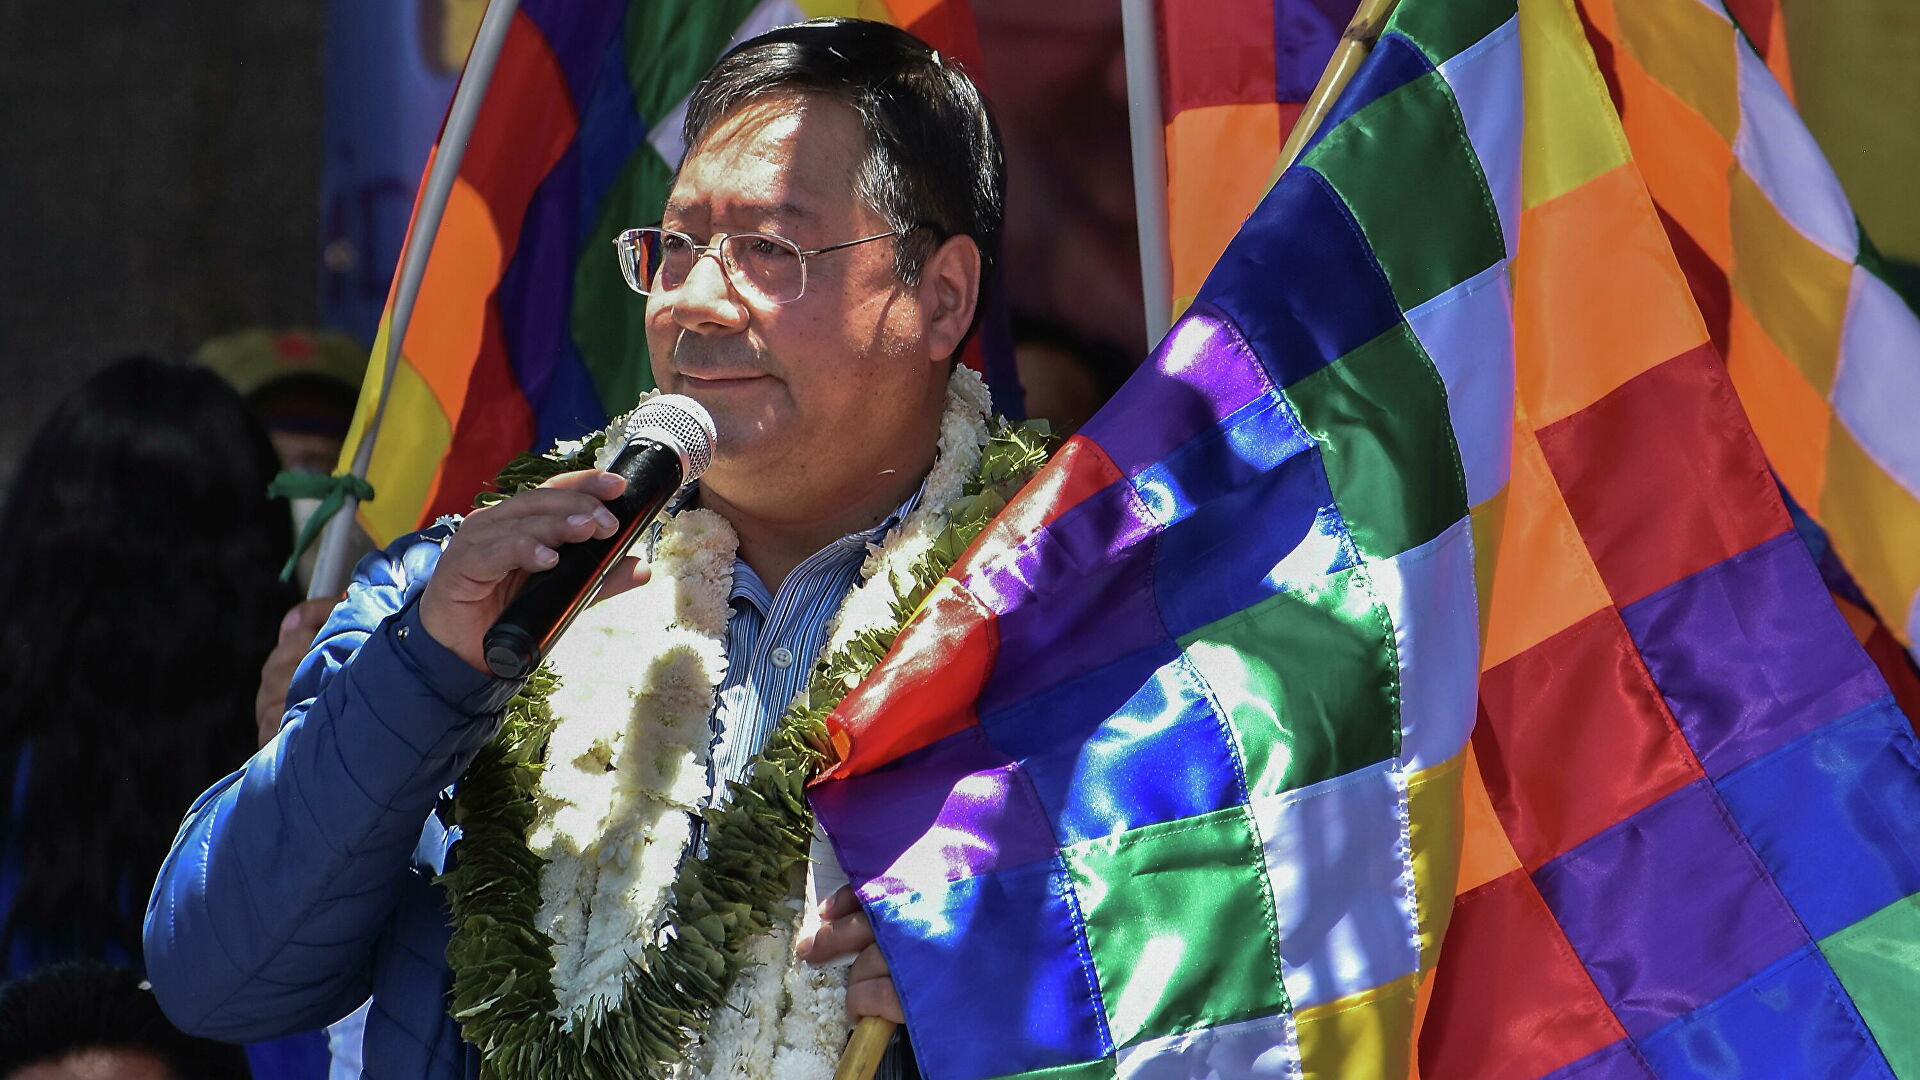 presidente-da-bolivia-pede-reconstrucao-com-justica-social